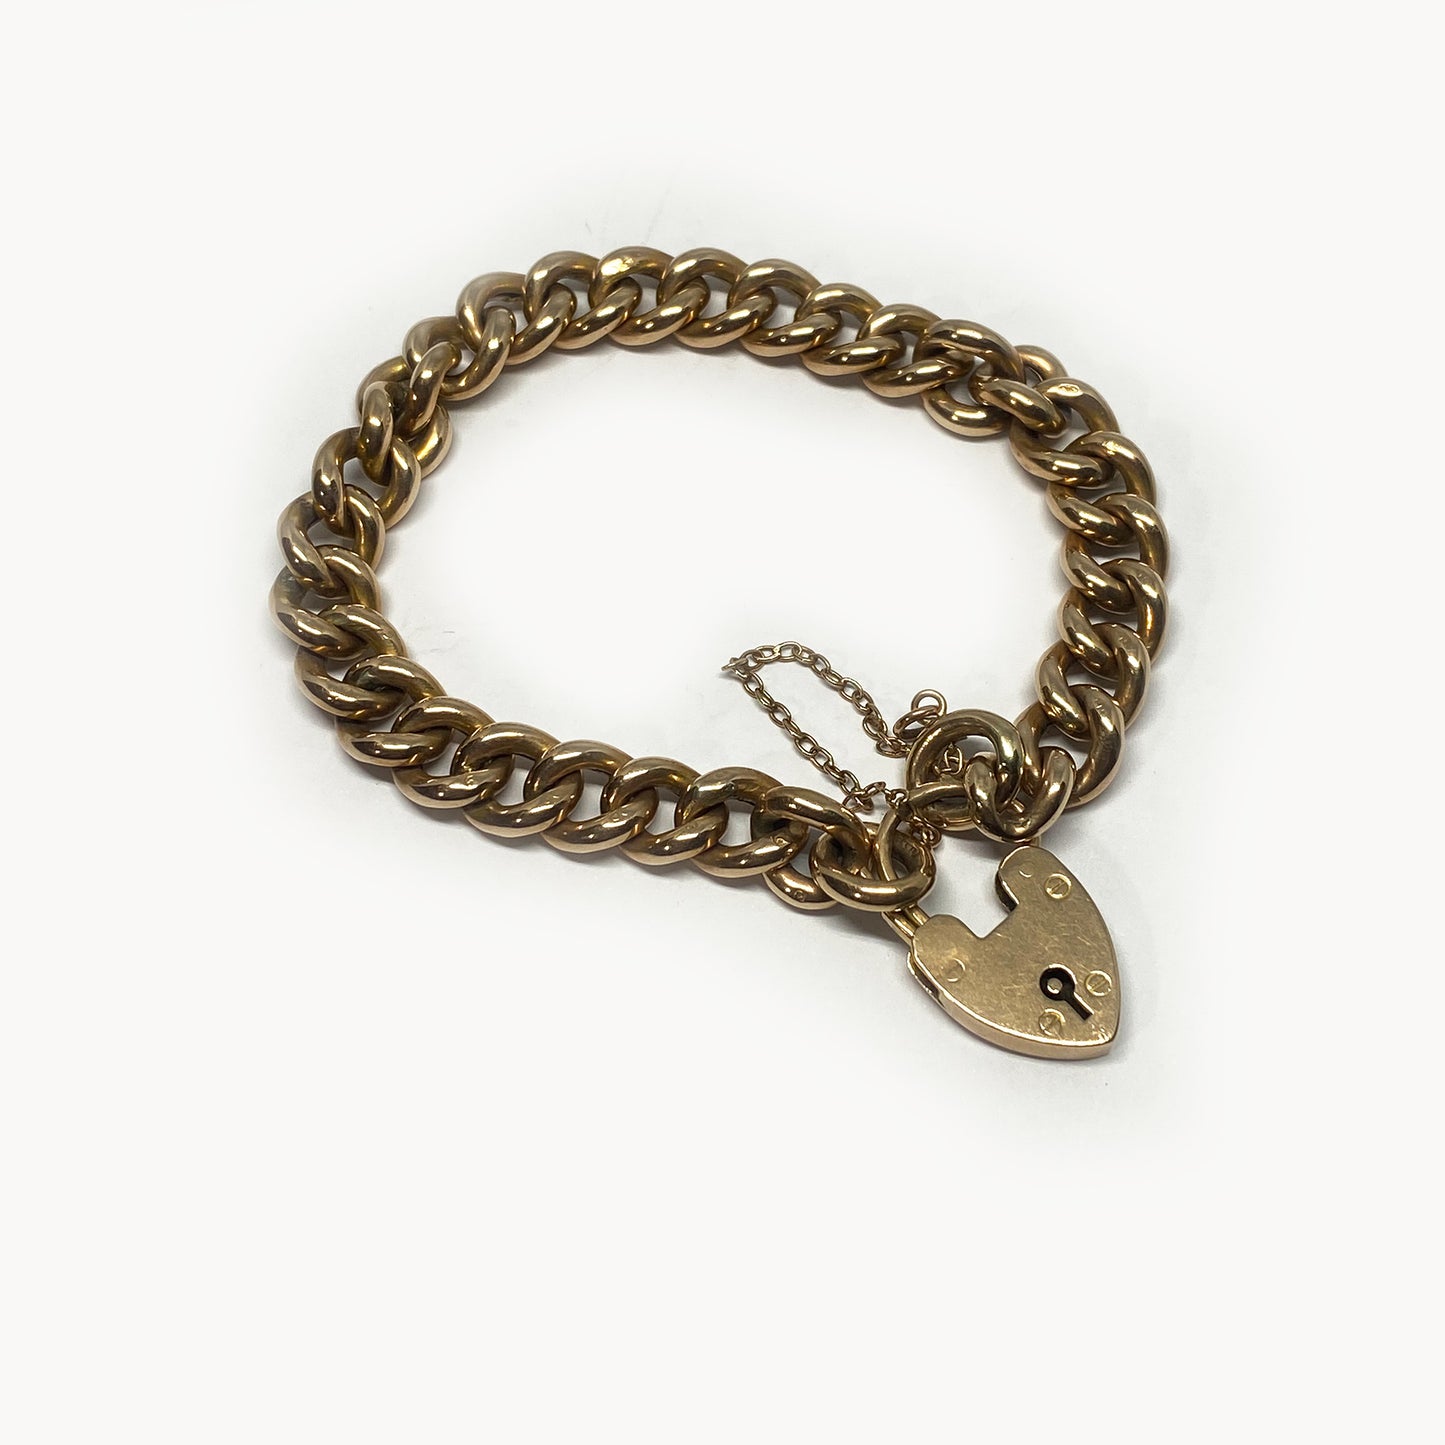 Antique 9k Rose Gold Curb Link Bracelet, 16 grams, 9 ct Gold Chain Bracelet